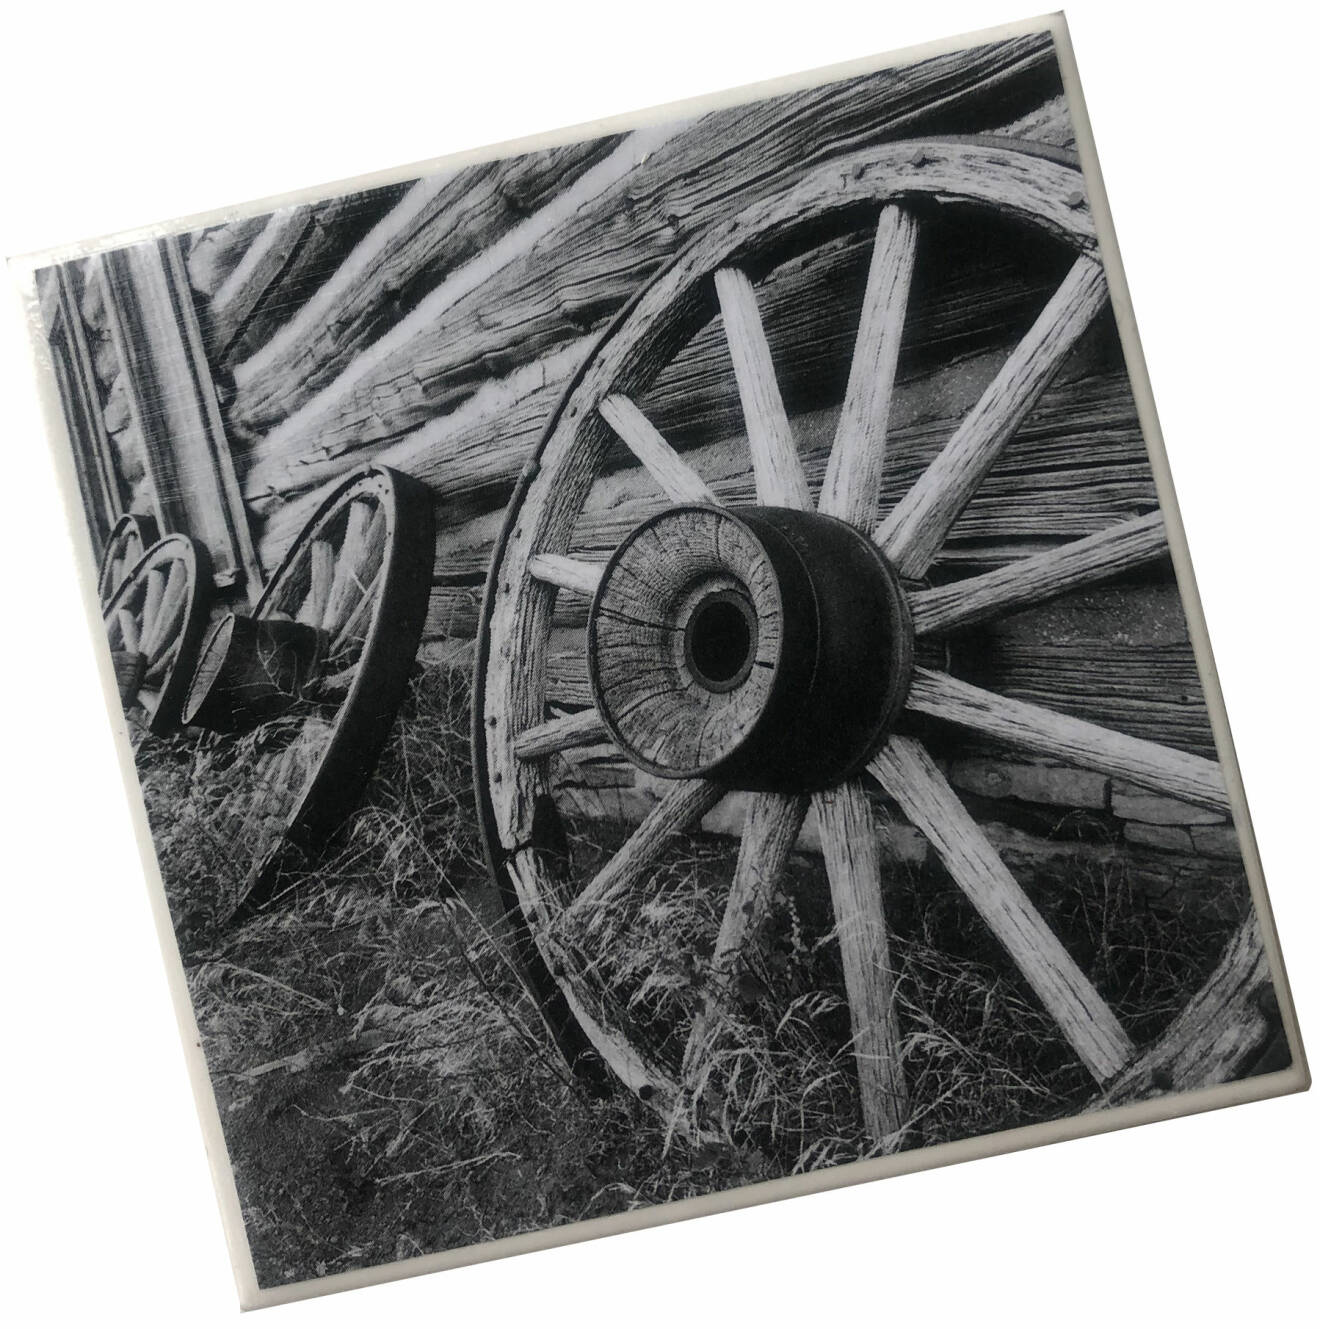 Coaster i keramik med gamla vagnshjul på, svarvit bild